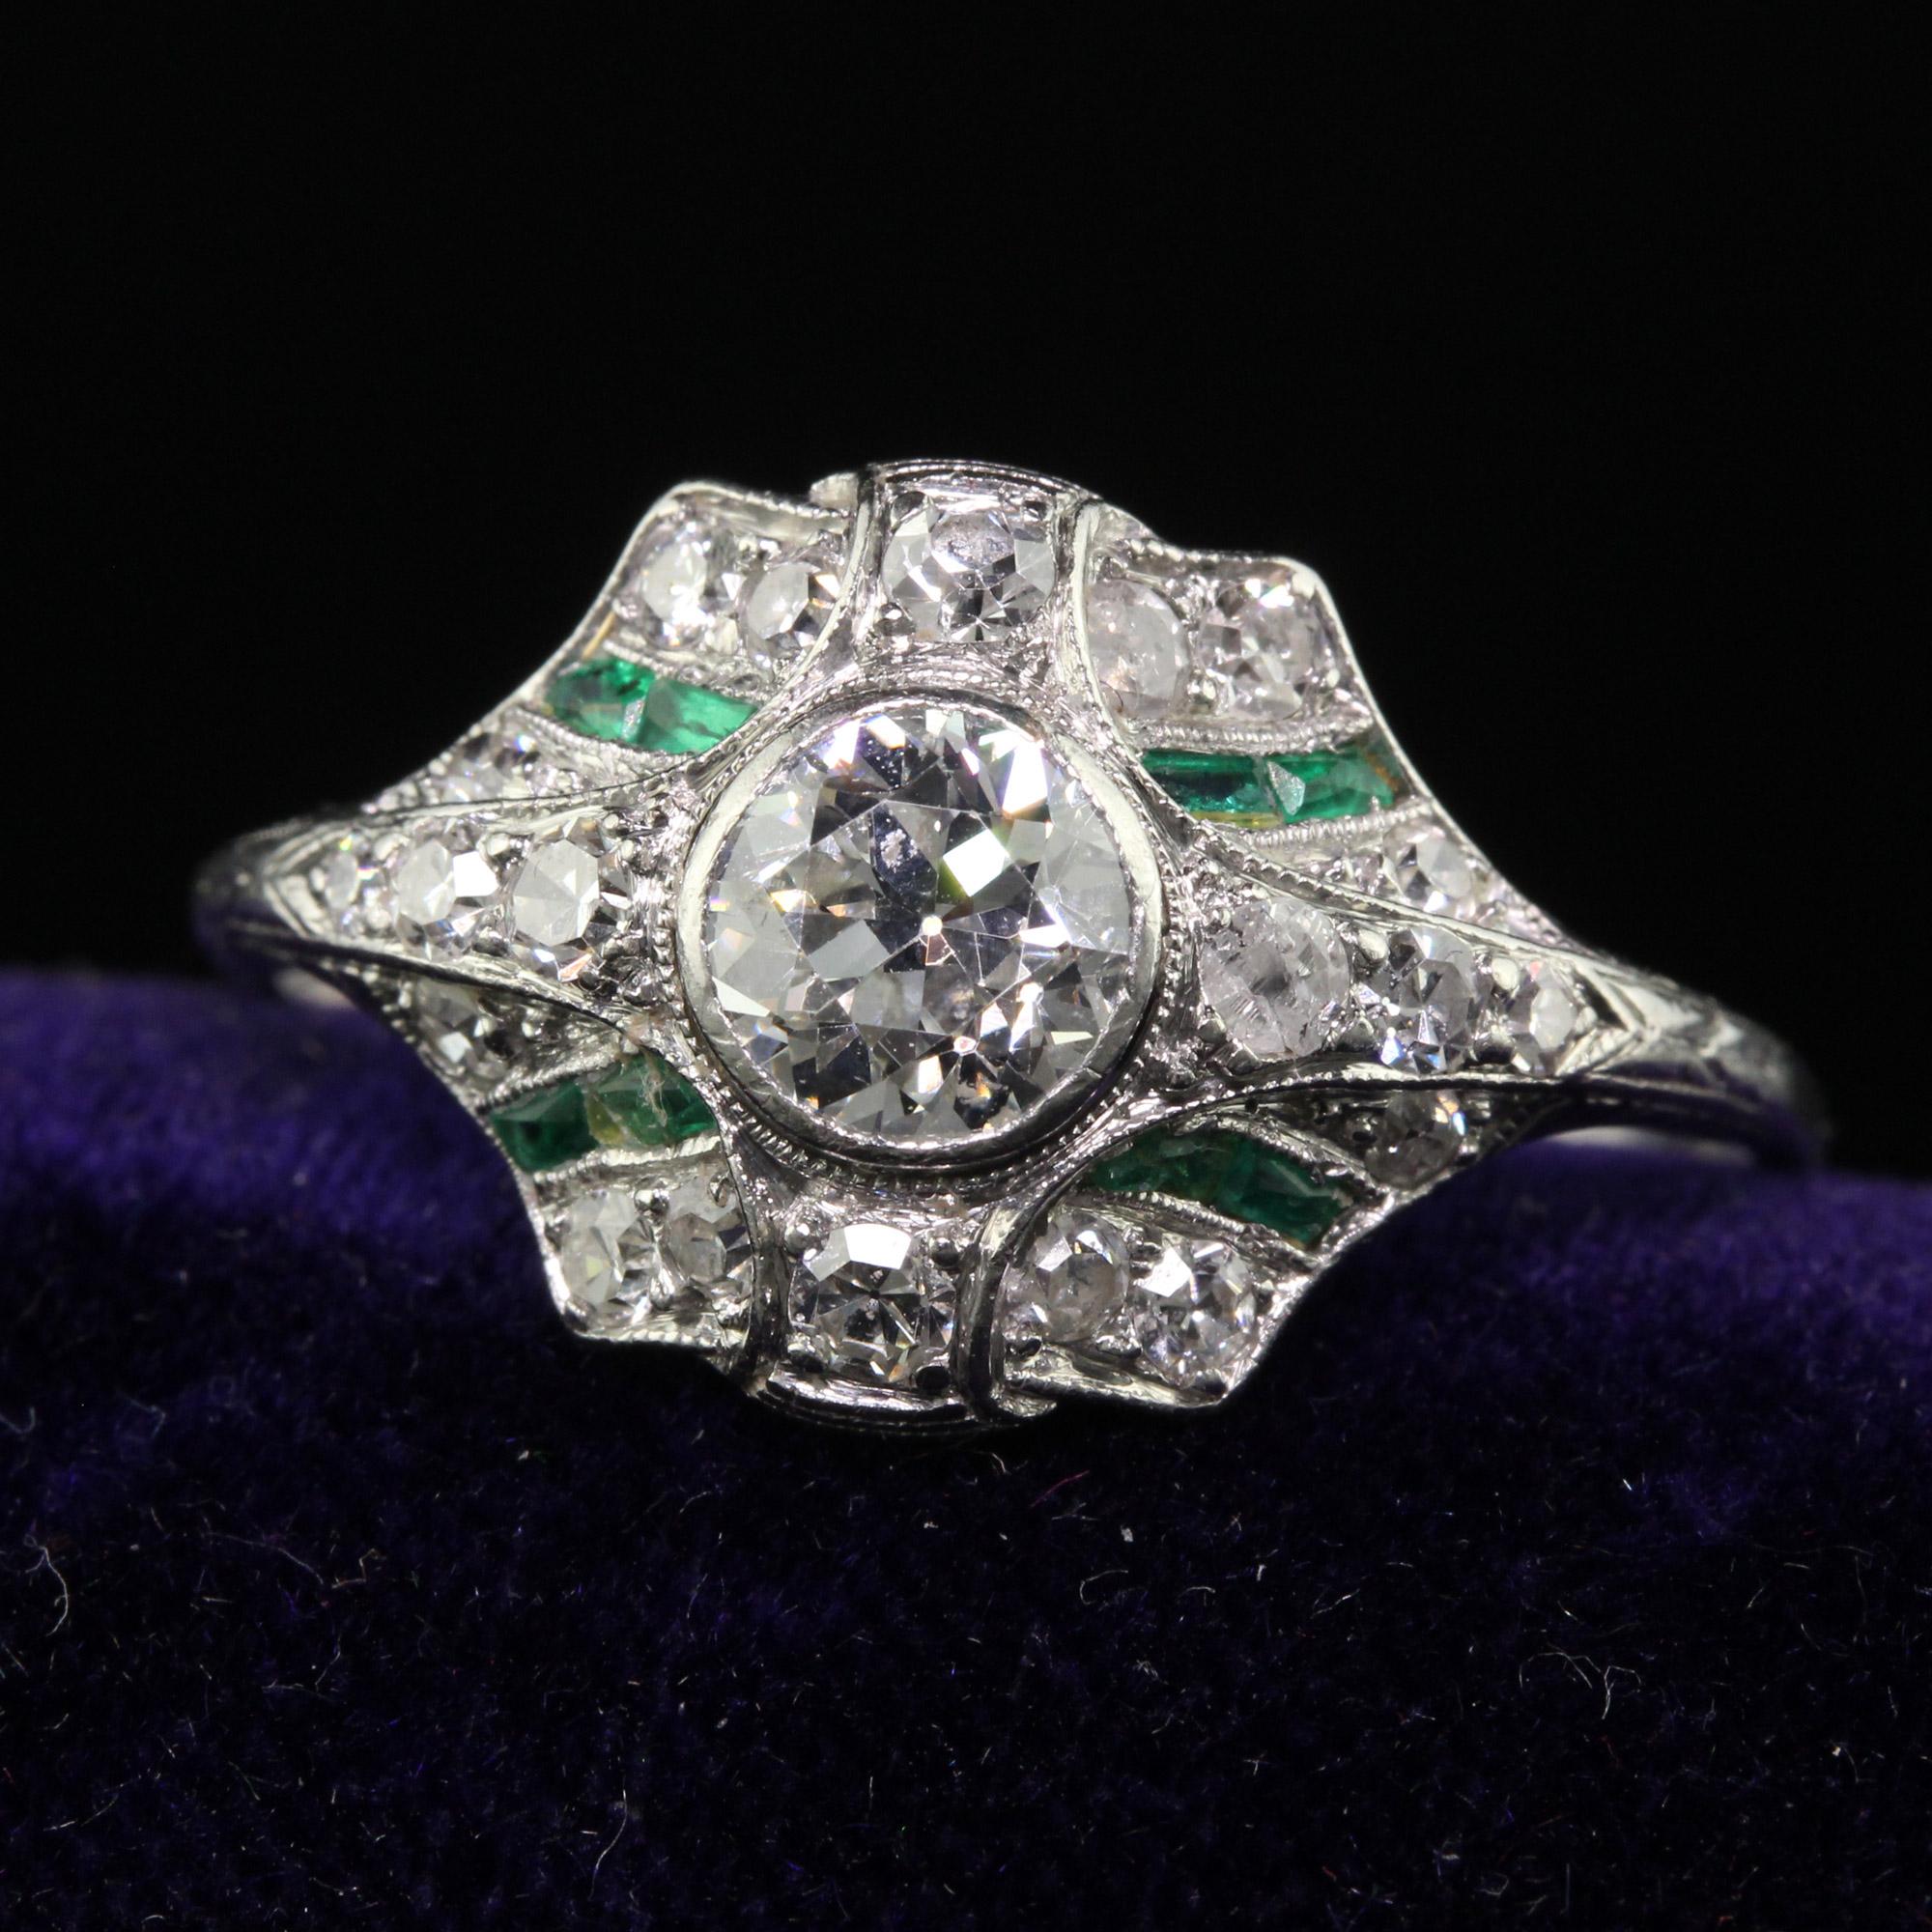 Schöne antike Art Deco Platin Alte Europäische Diamant und Smaragd Verlobungsring. Dieser unglaubliche Verlobungsring ist aus Platin gefertigt. In der Mitte befindet sich ein wunderschöner Diamant mit altem europäischem Schliff, der mit kleineren